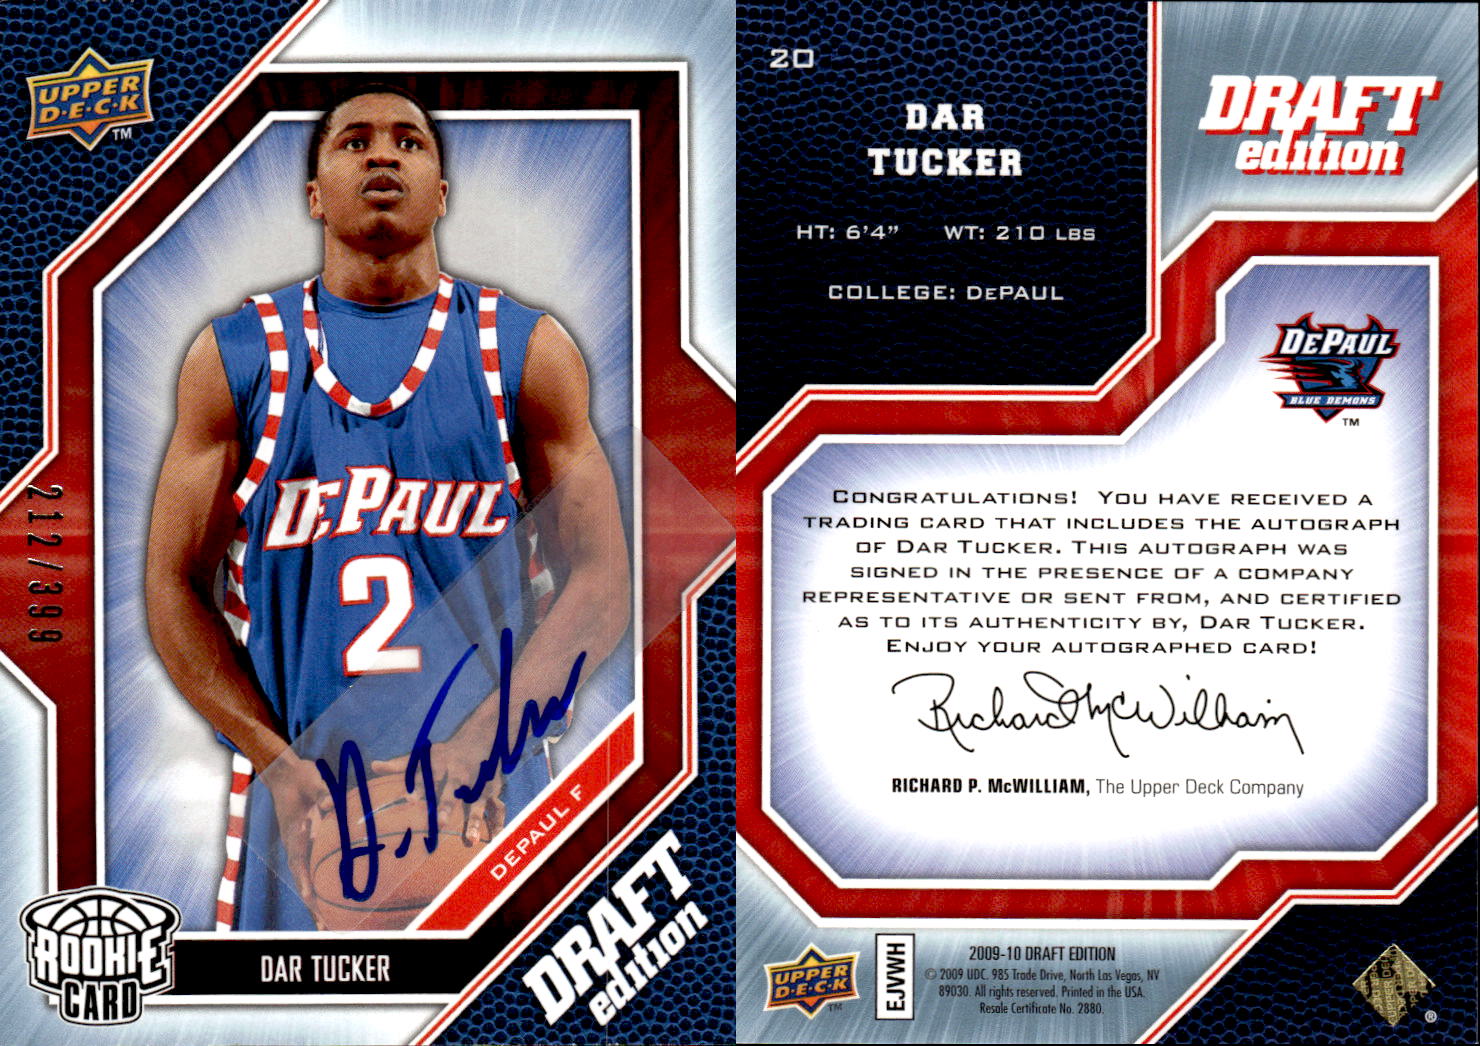 2009-10 Upper Deck Draft Edition Autographs #20 Dar Tucker/399